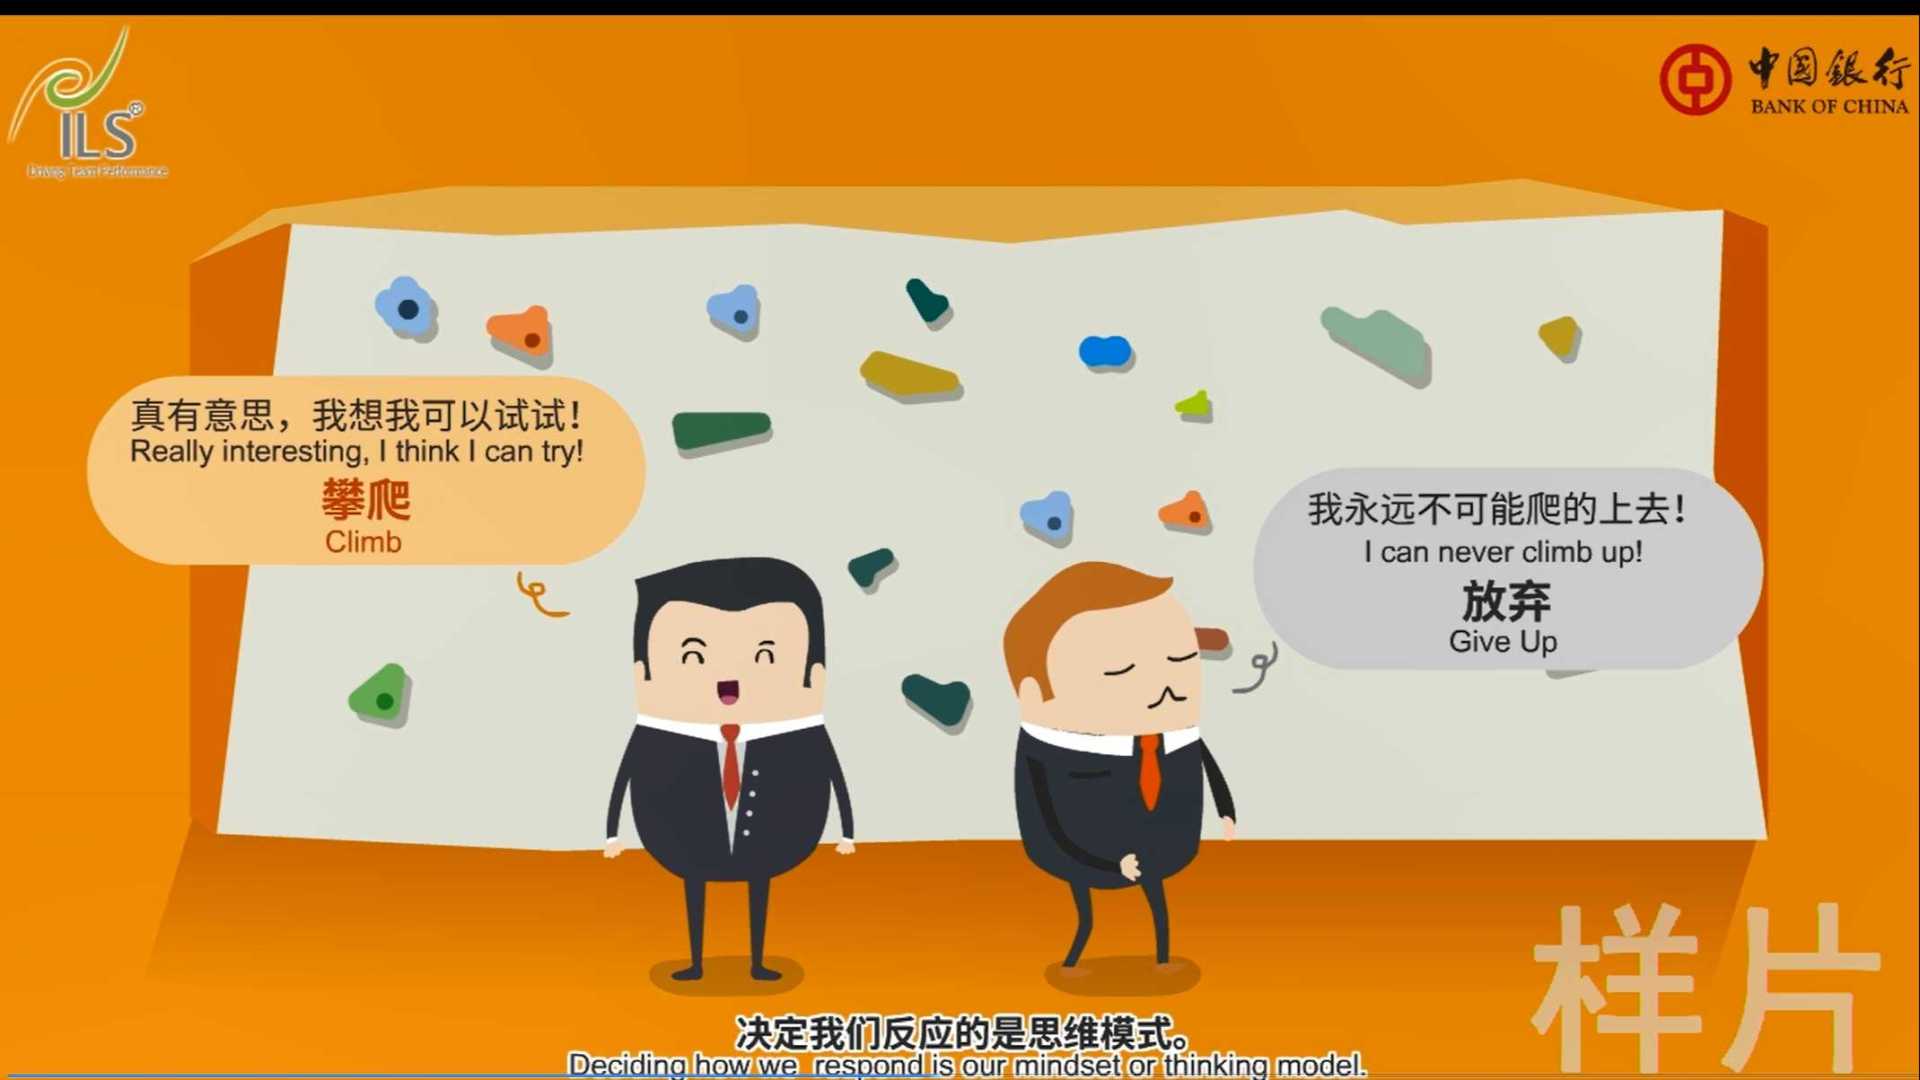 中国银行MG宣传动画